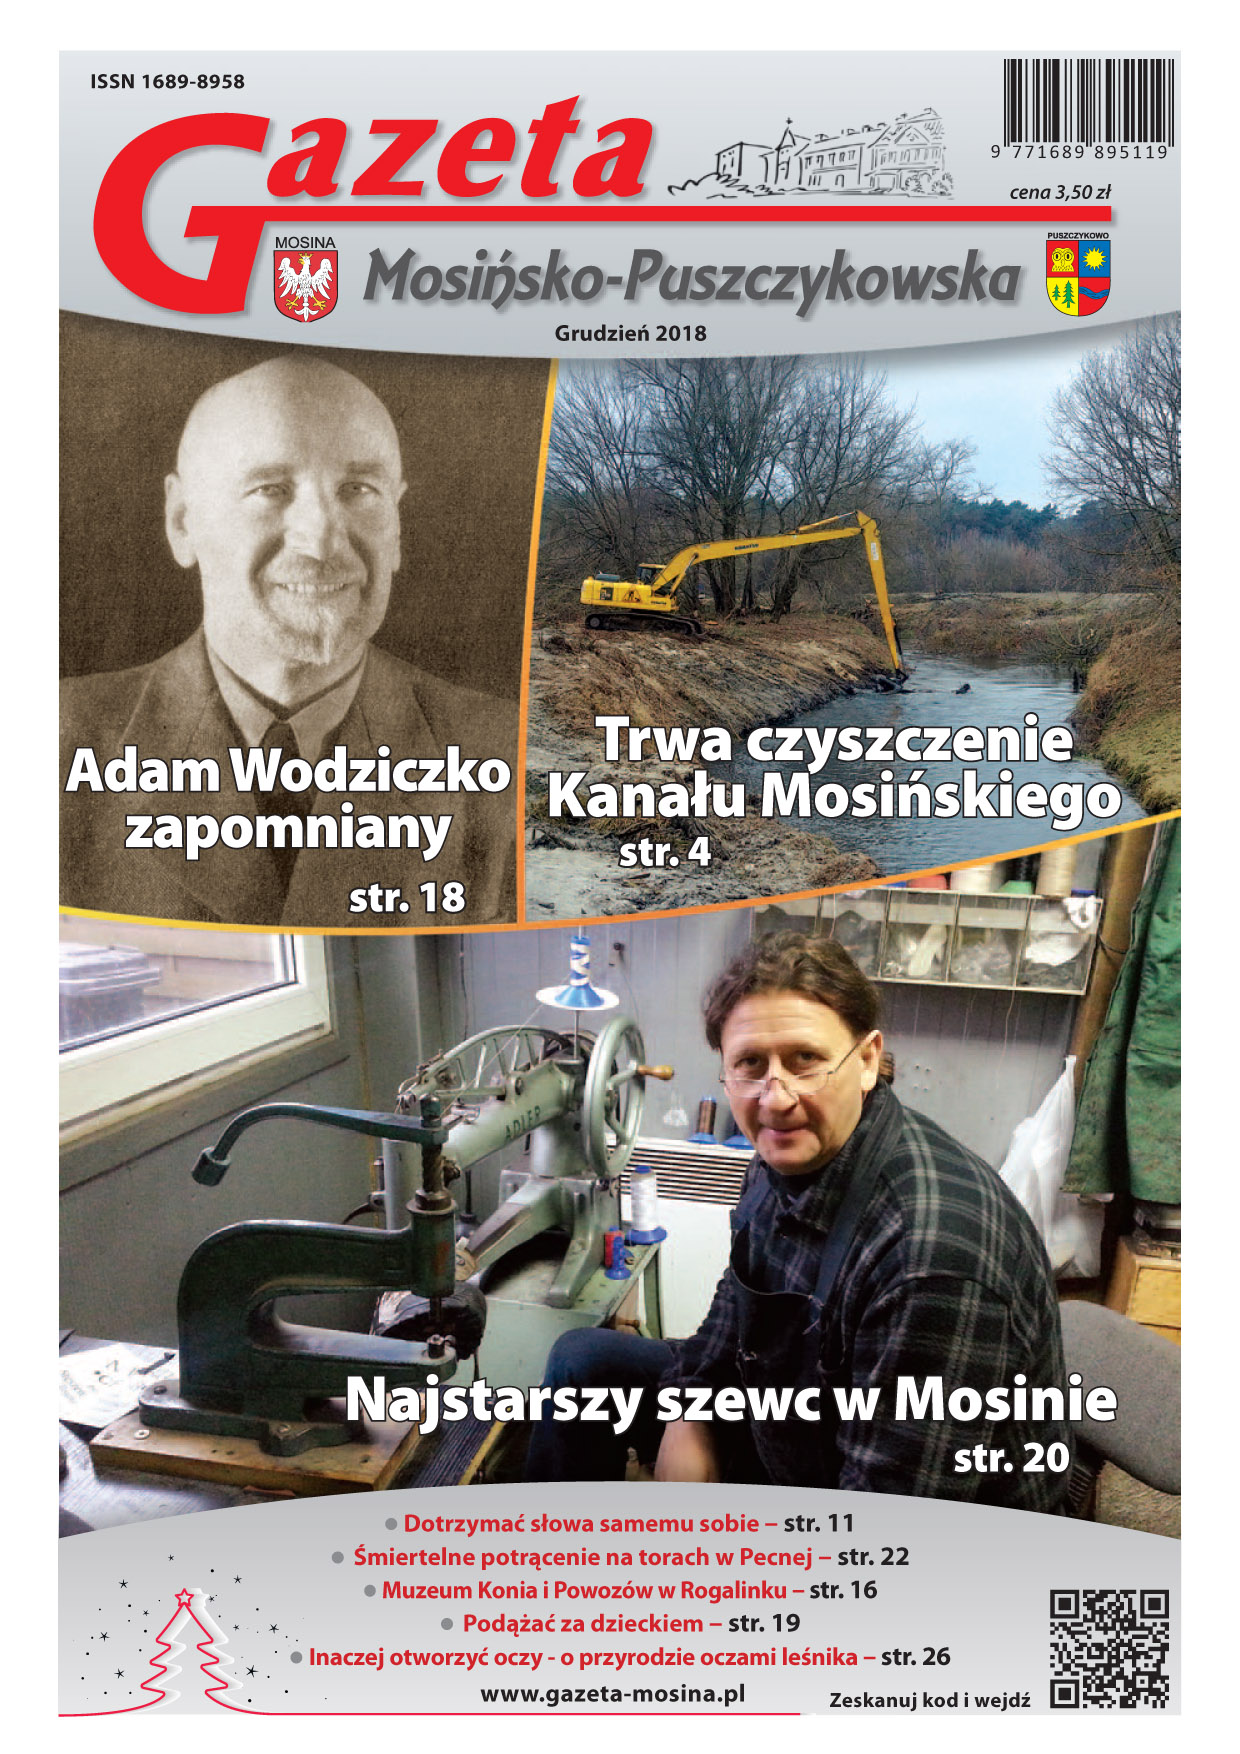 grudniowe wydanie Gazety Mosińsko-Puszczykowskiej 2018